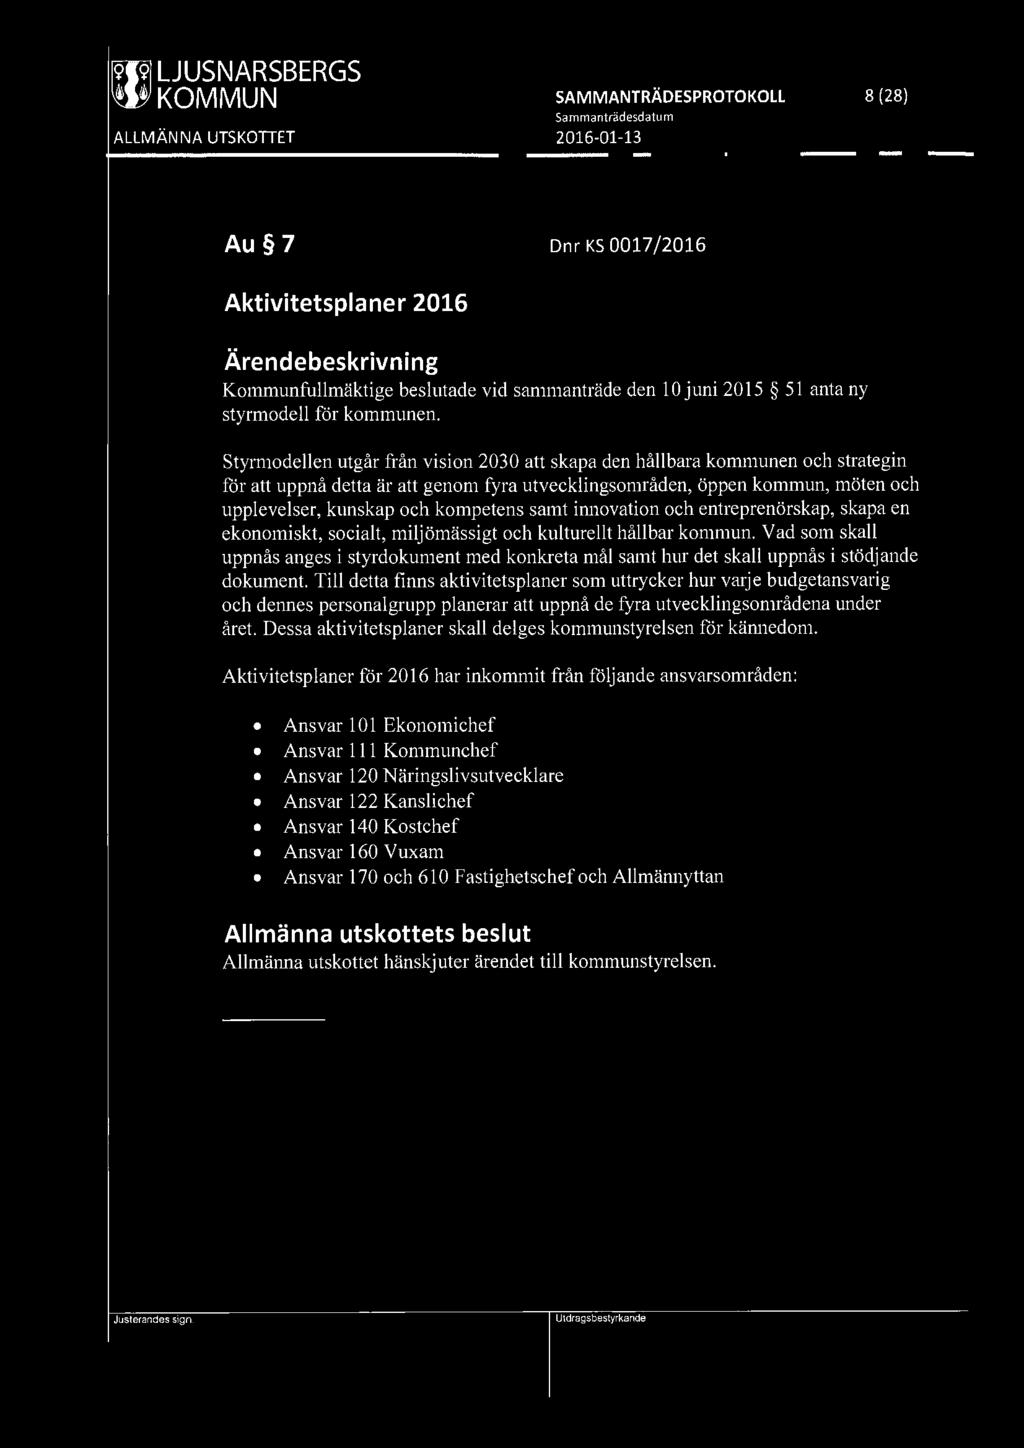 [919] LJUSNARSBERGS ~ KOMMUN SAMMANTRÄDESPROTOKOLL 8 (28) Au 7 Dnr KS 0017/2016 Aktivitetsplaner 2016 Kommunfullmäktige beslutade vid sammanträde den 10 juni 2015 51 anta ny styrmodell för kommunen.